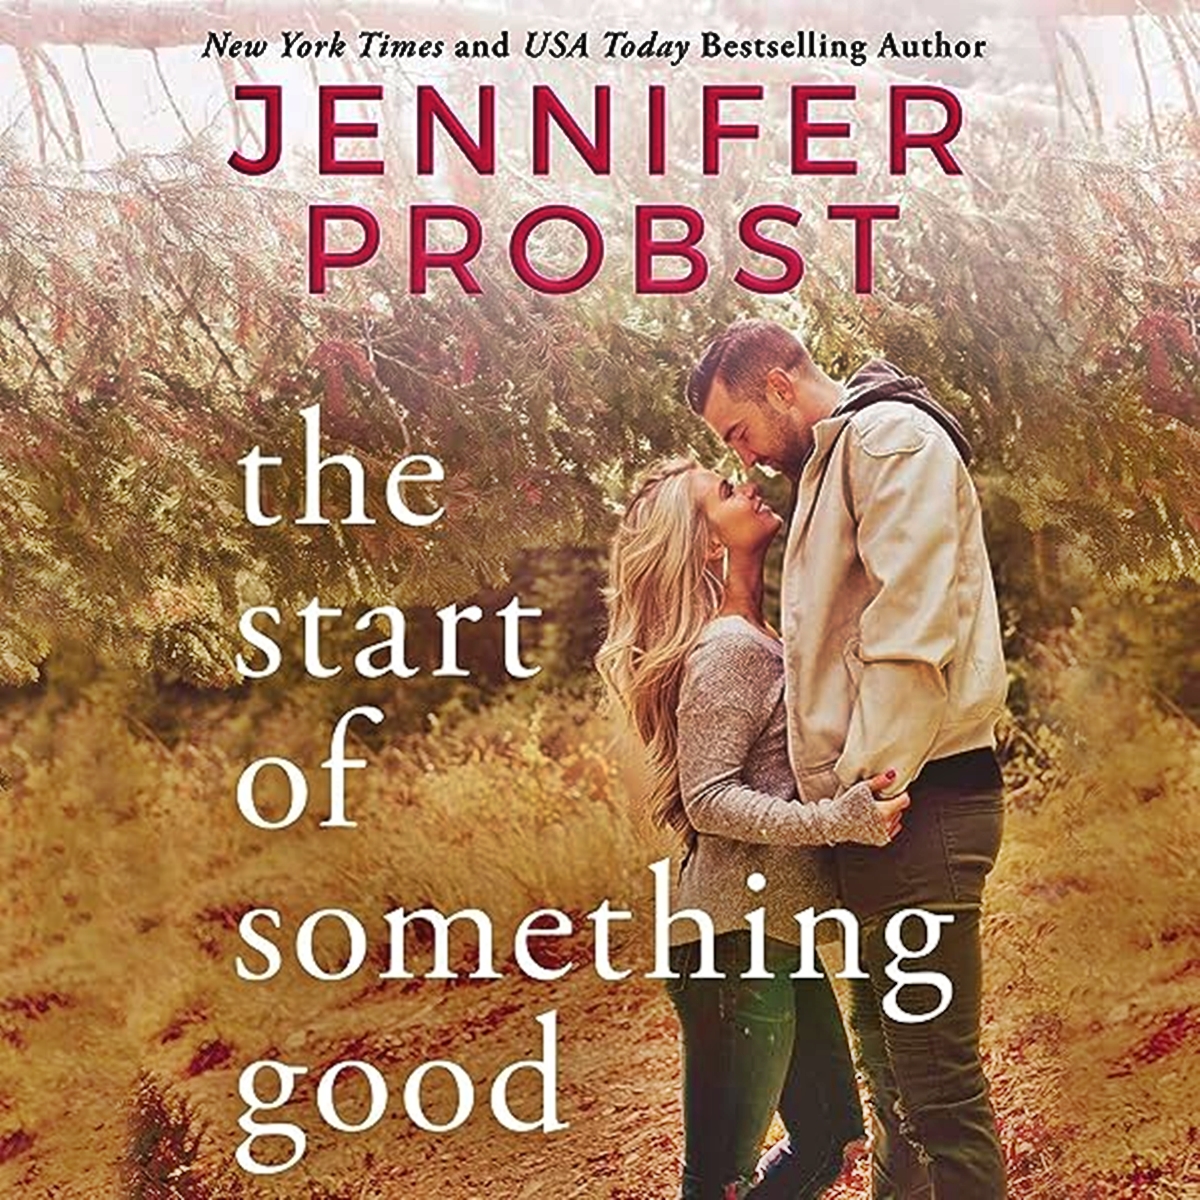 14 Best Jennifer Probst Kindle Books for 2023